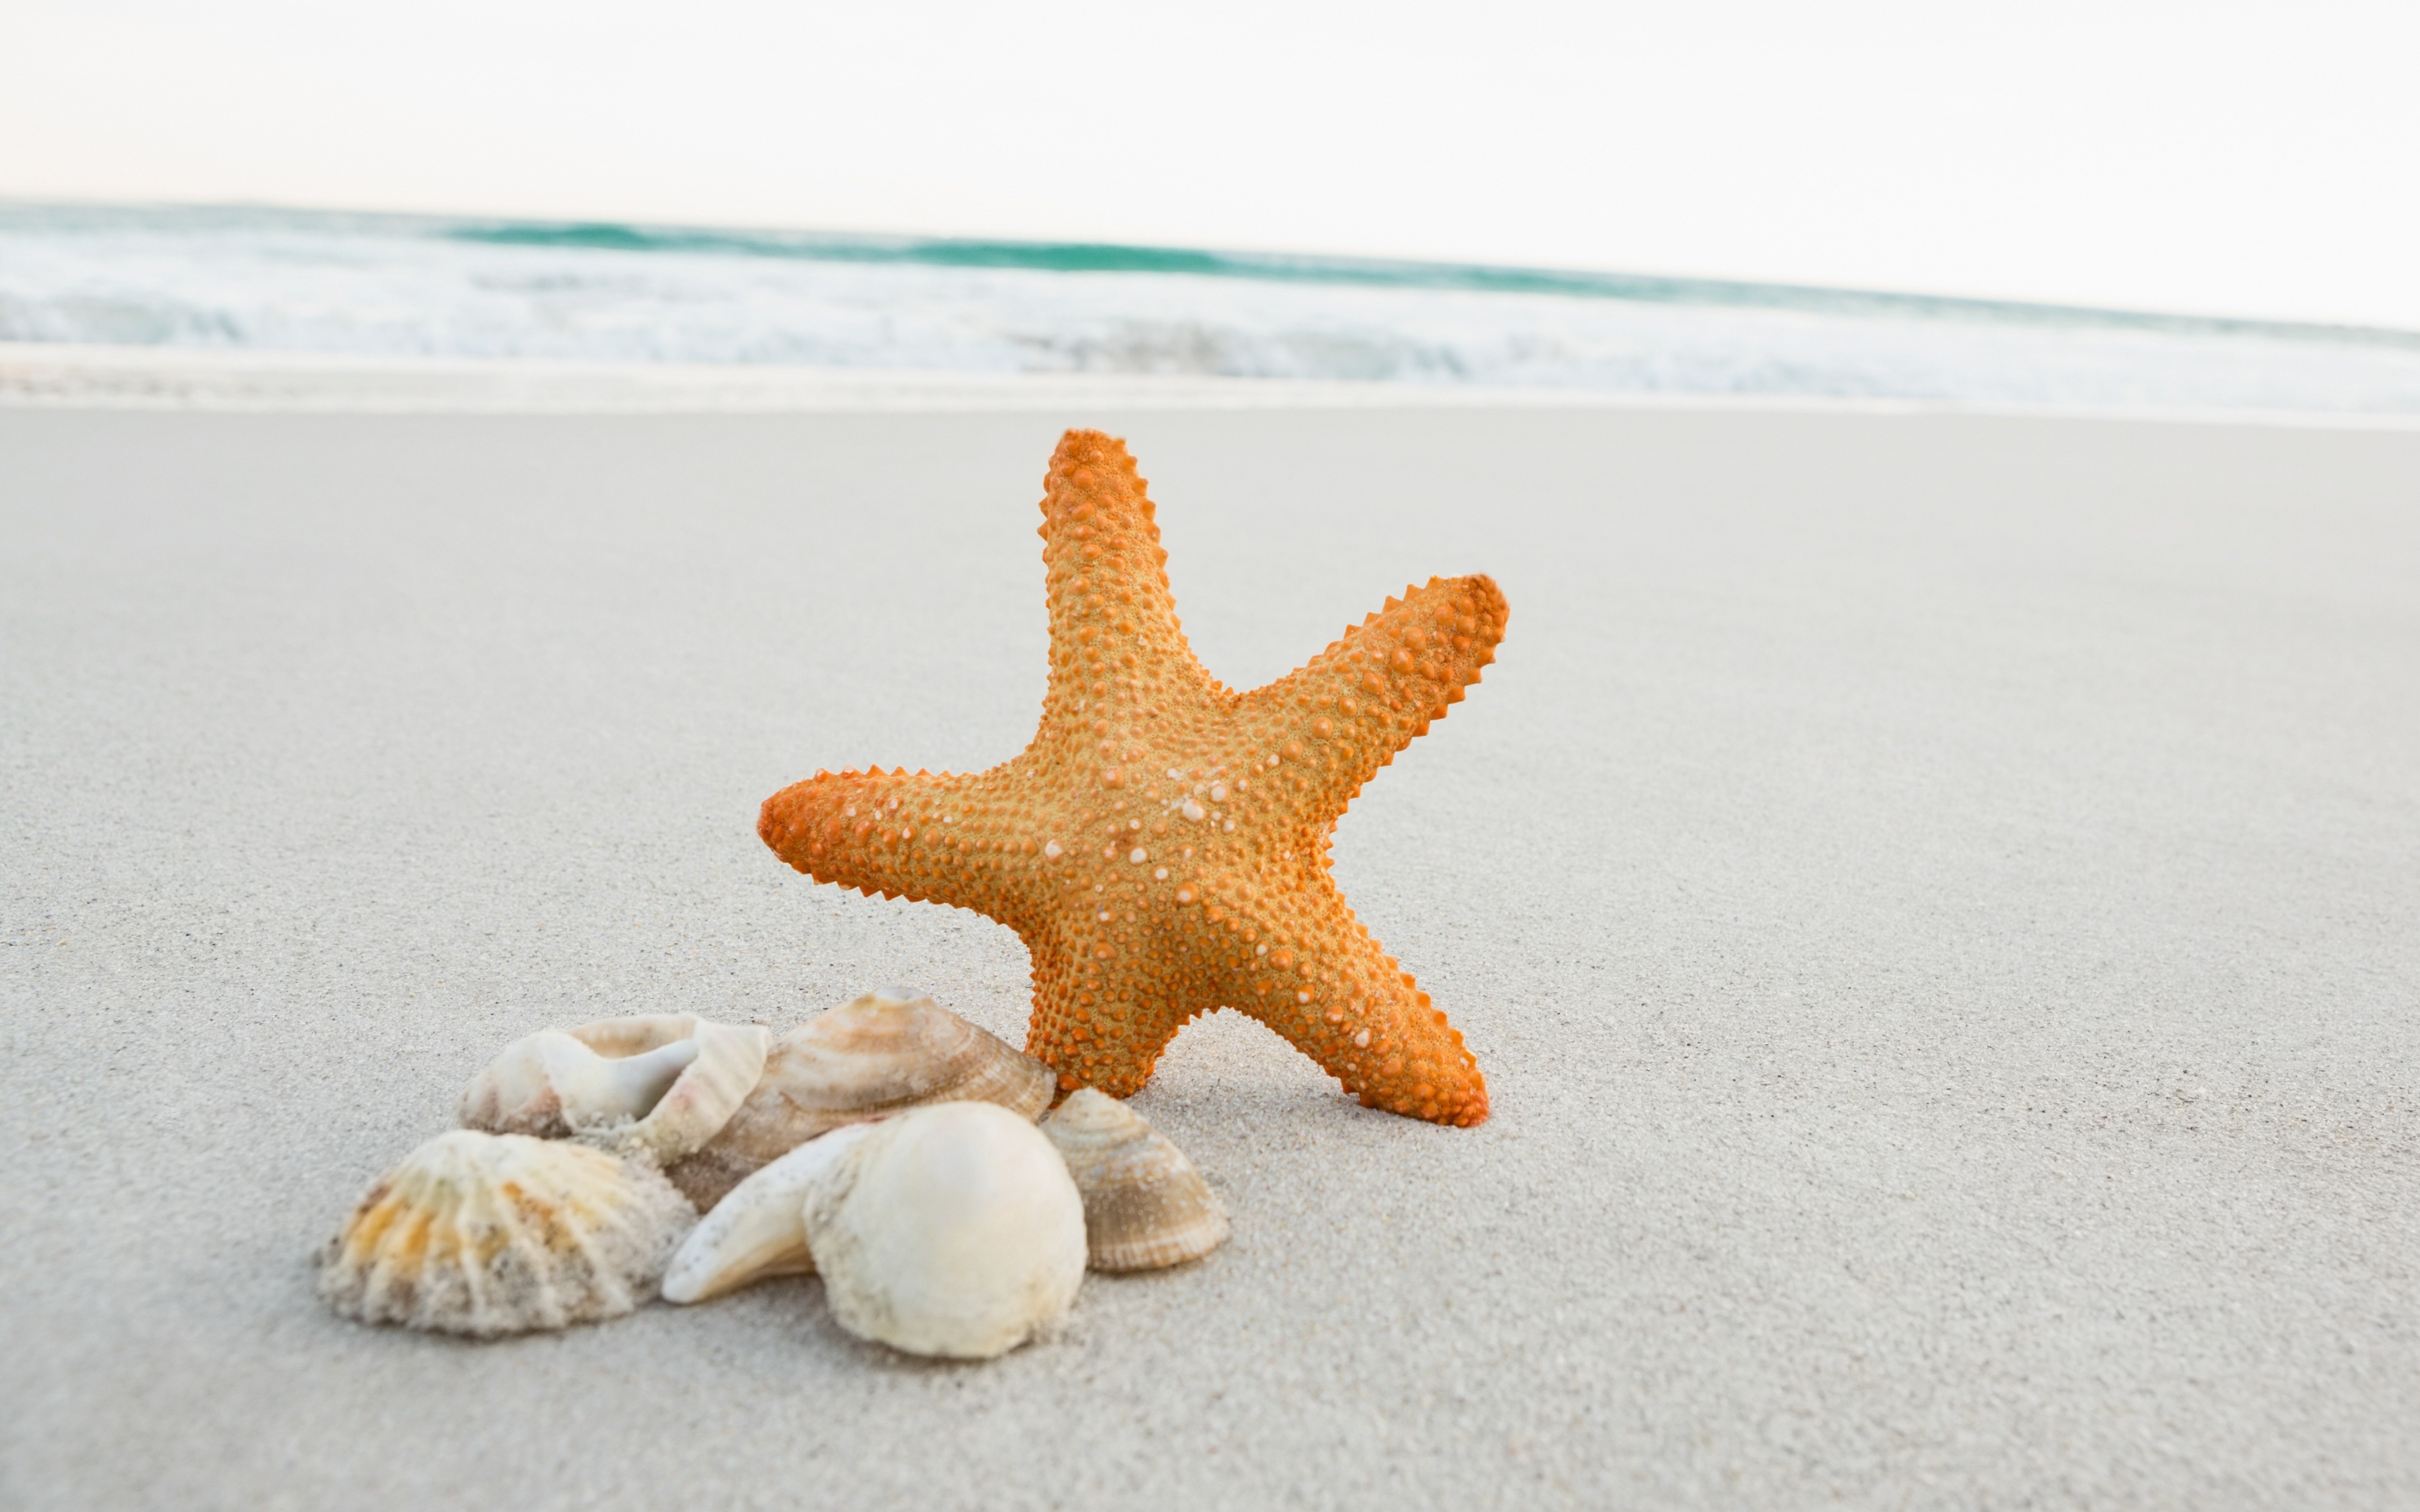 Seashell, starfish, sand, beach, 2880x1800 wallpaper